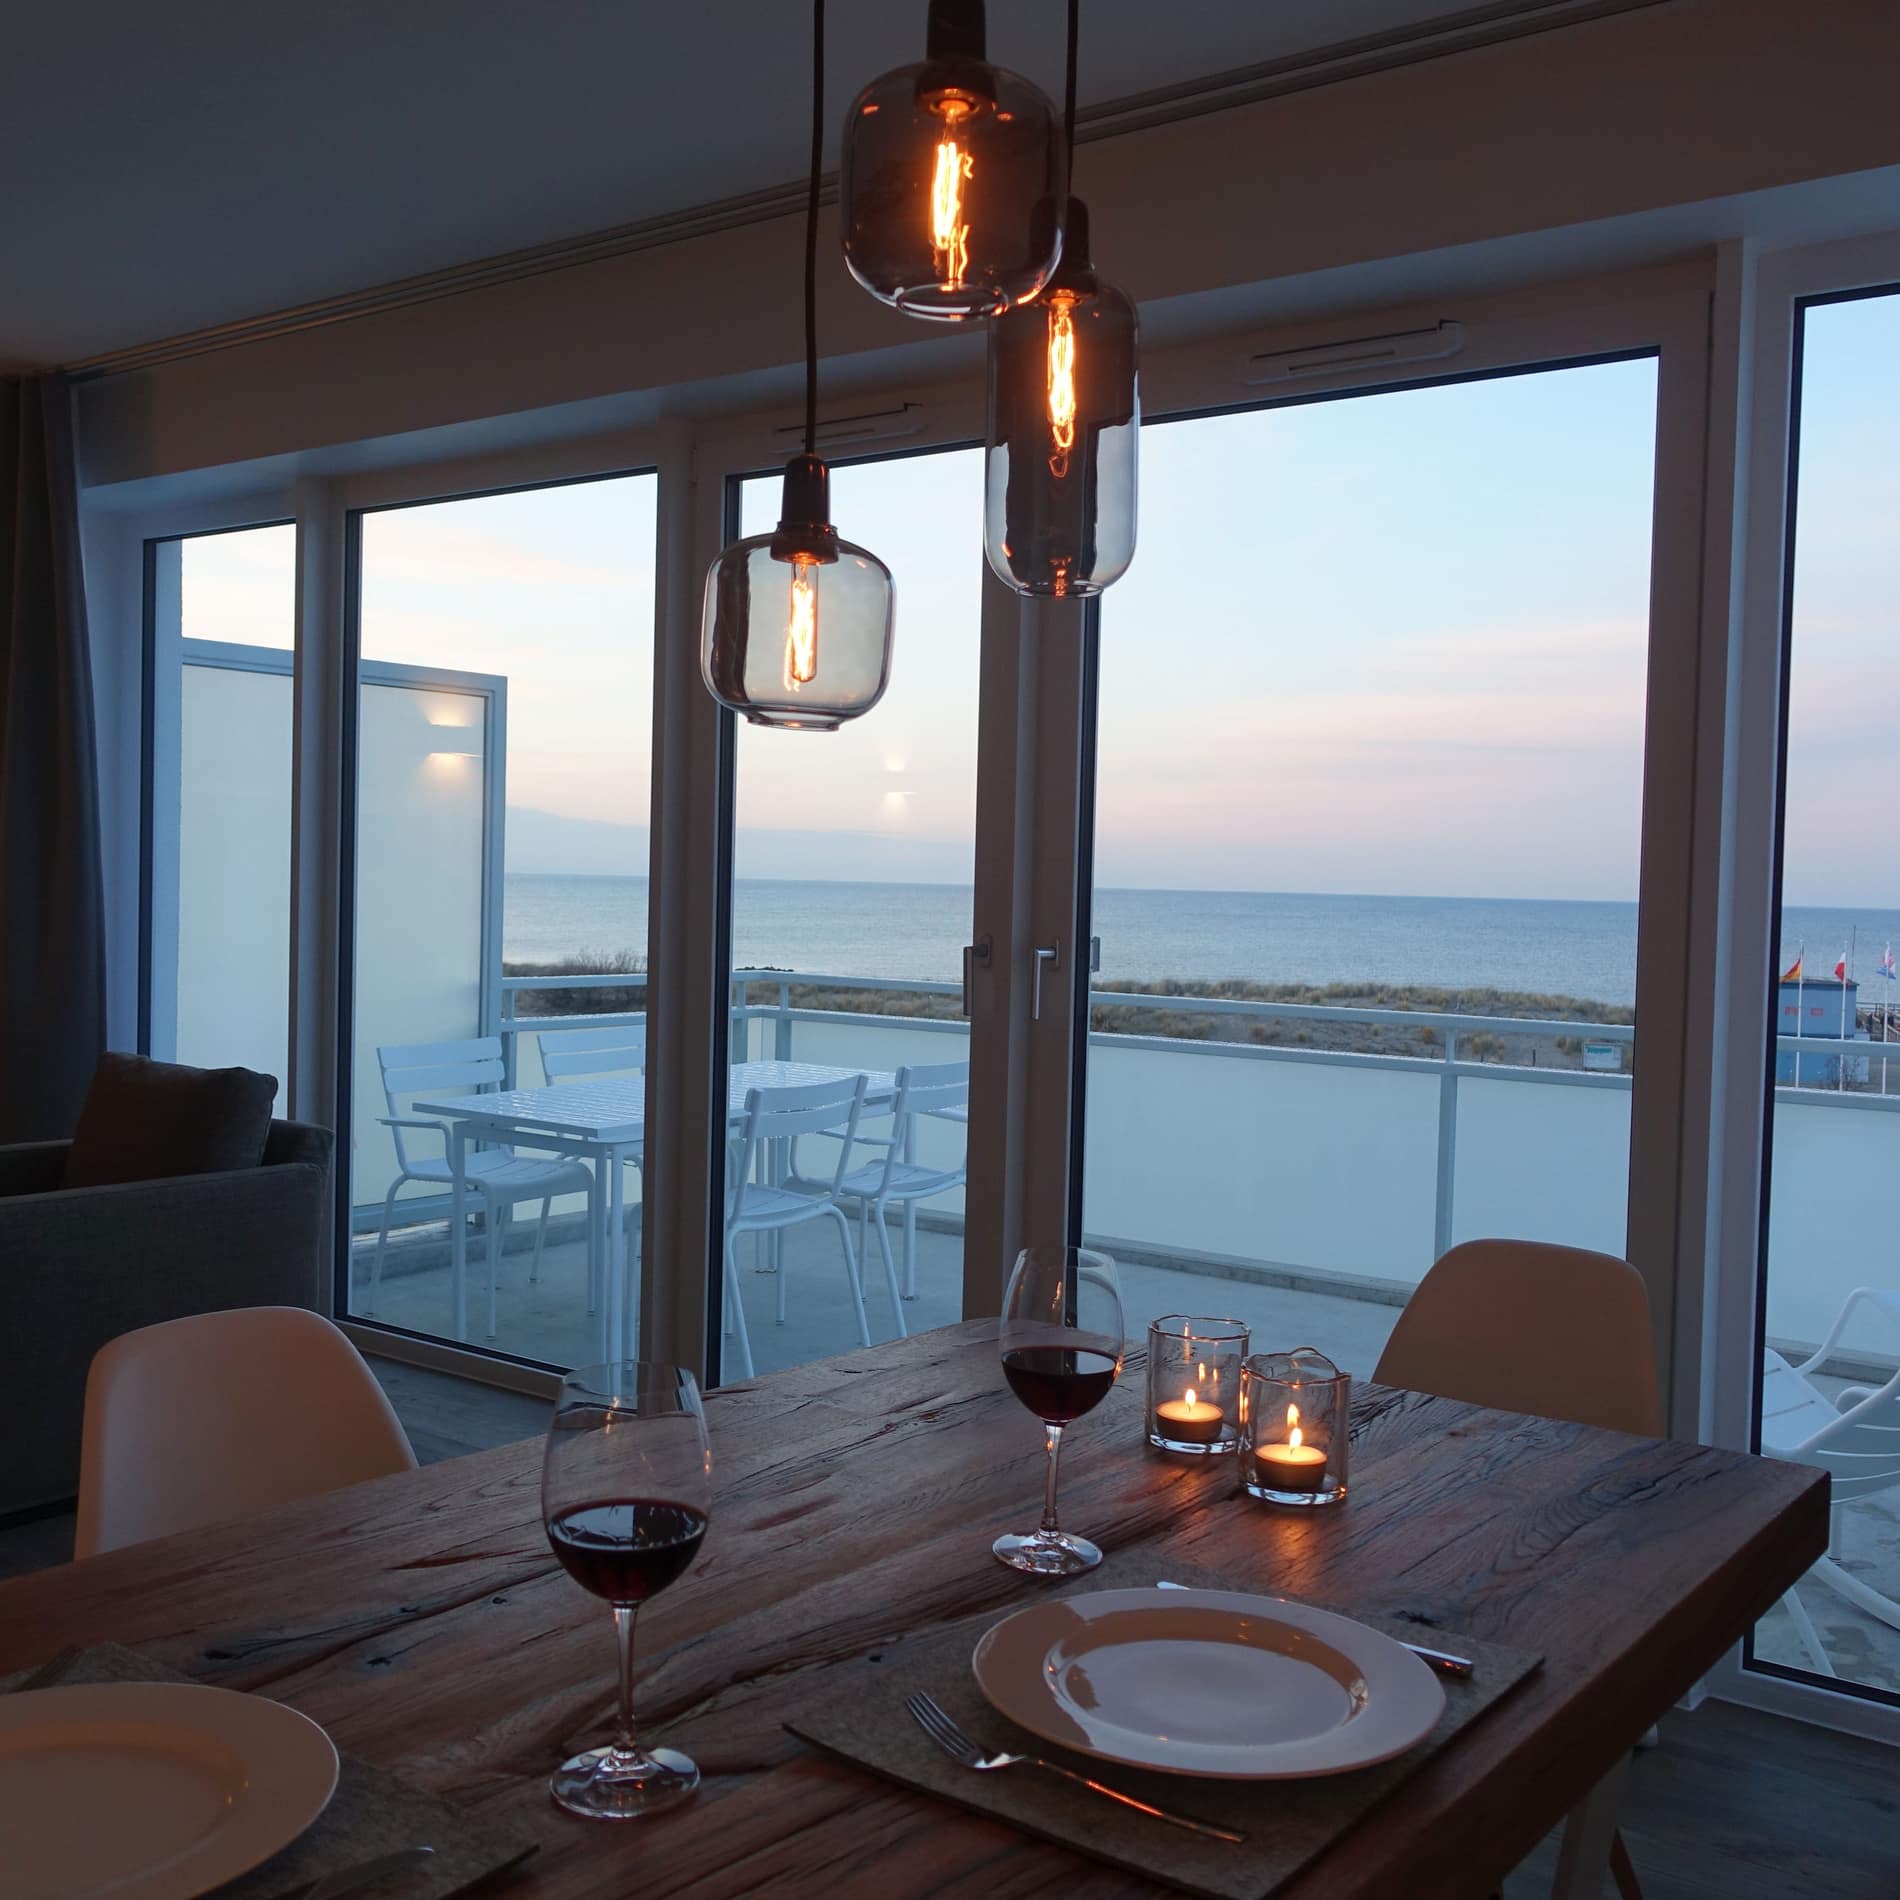 Romantische Luxus-Ferienwohnung in Heiligenhafen für zwei Personen mit wunderschönem Ausblick